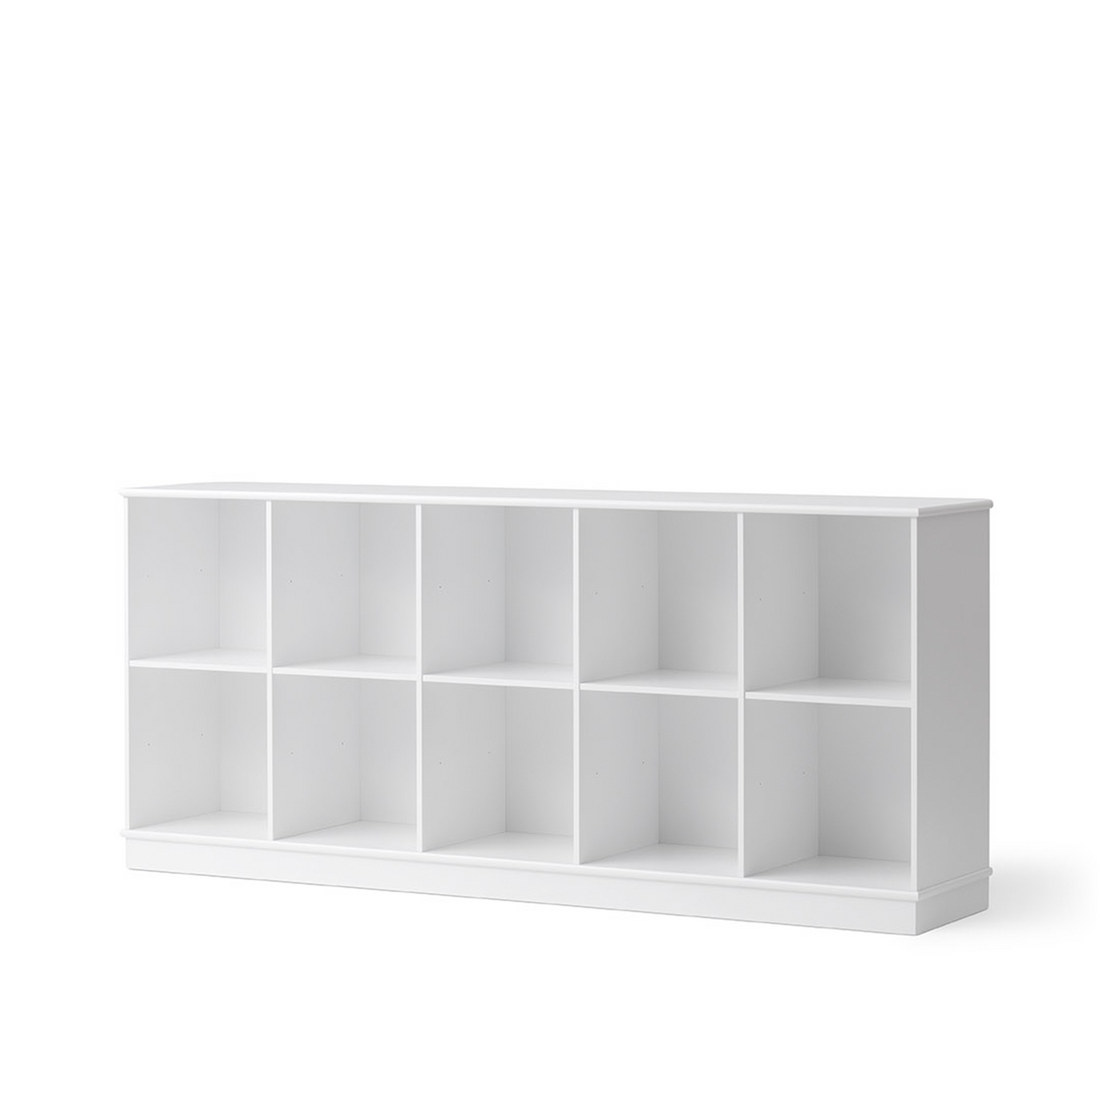 Oliver Furniture Wood Shelving Unit 5x2 Horizontal Shelf with Base